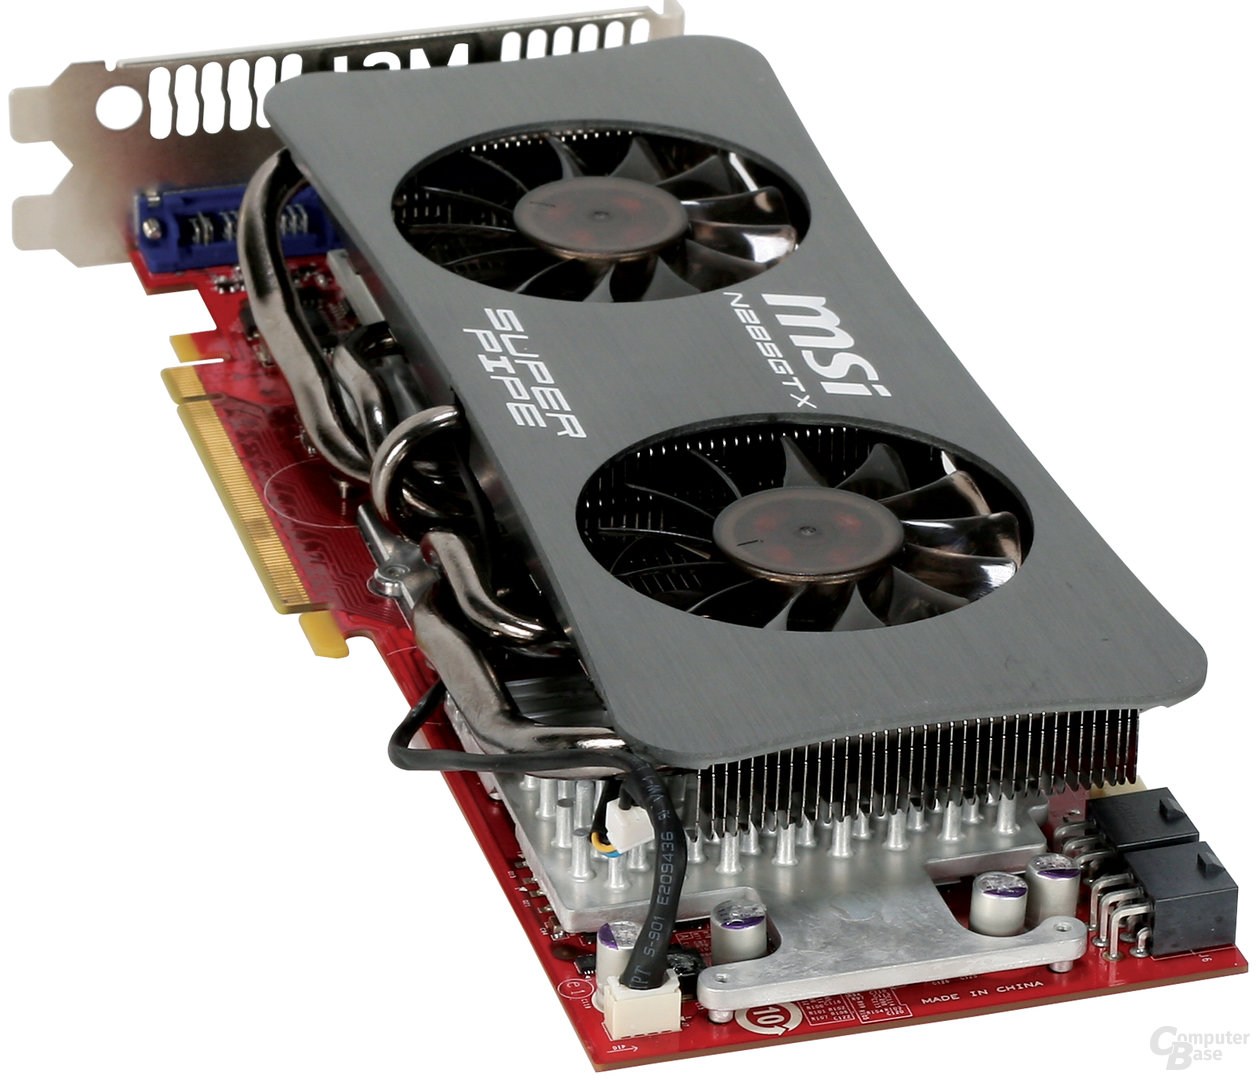 MSI GeForce GTX 285 „SuperPipe